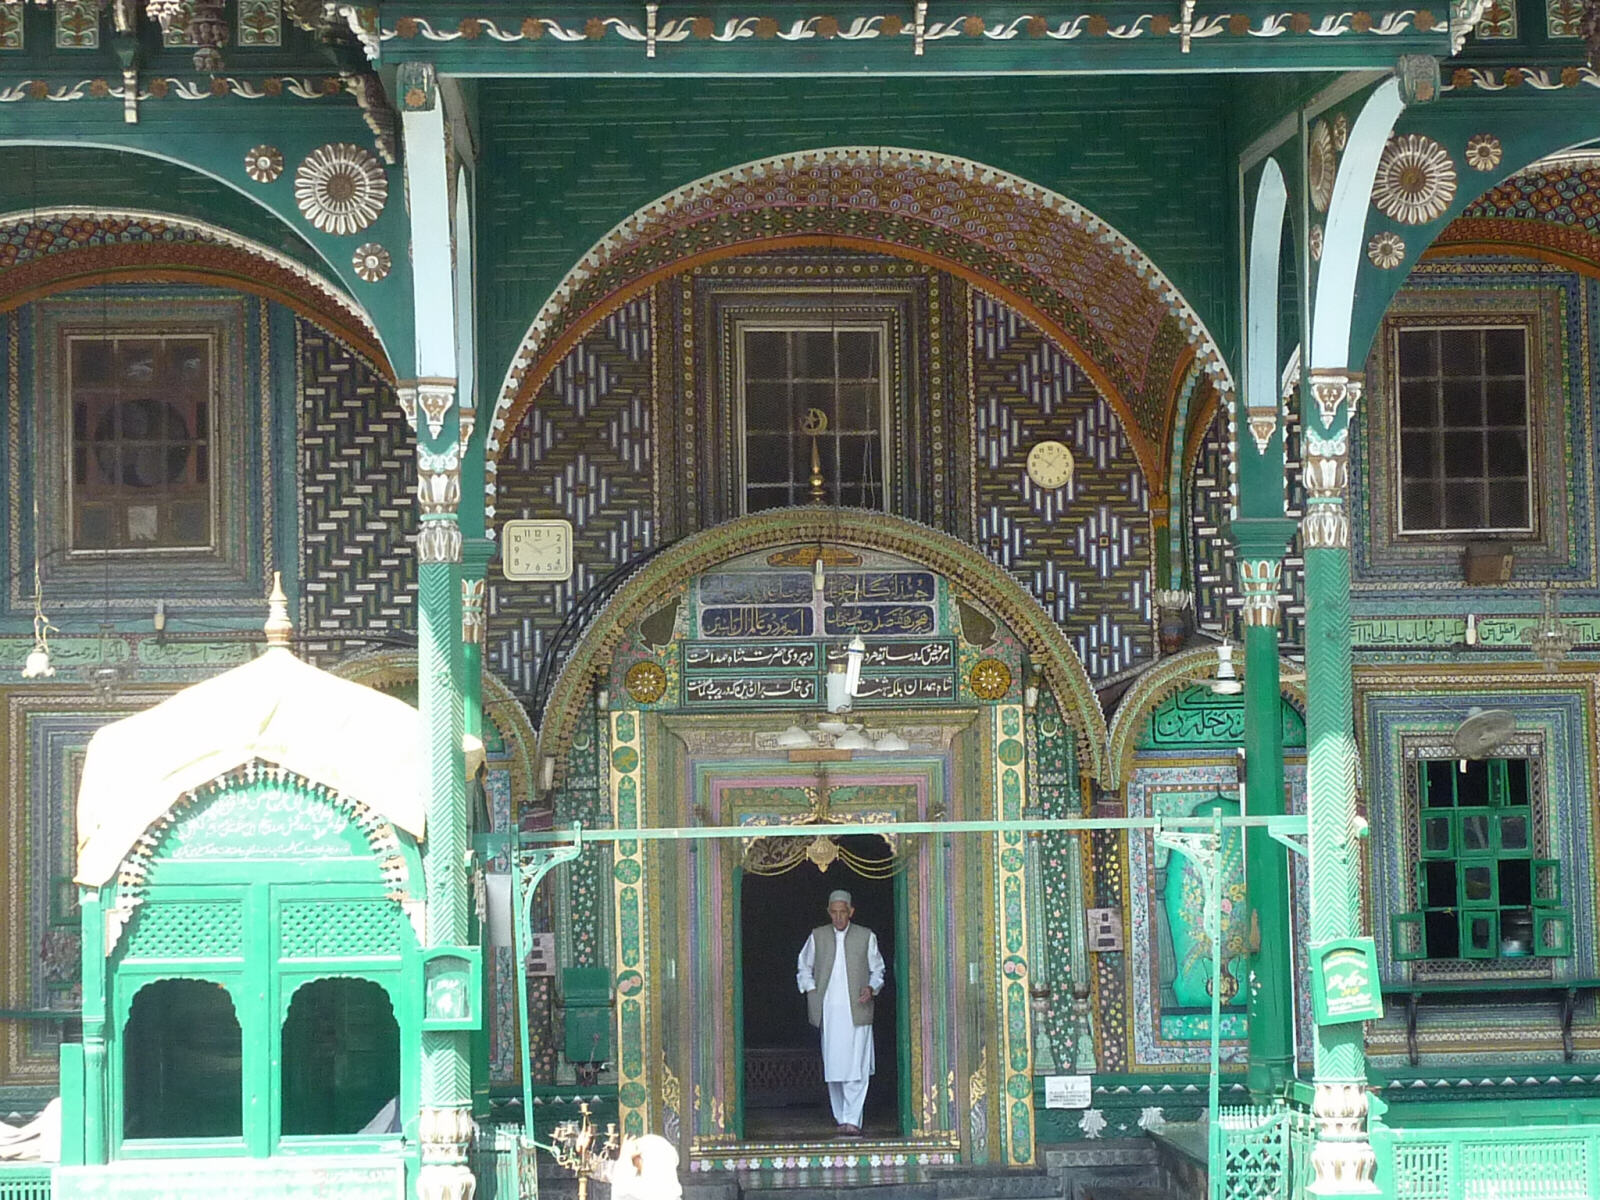 Shah Hamdan Mosque in Srinagar, Kashmir, India